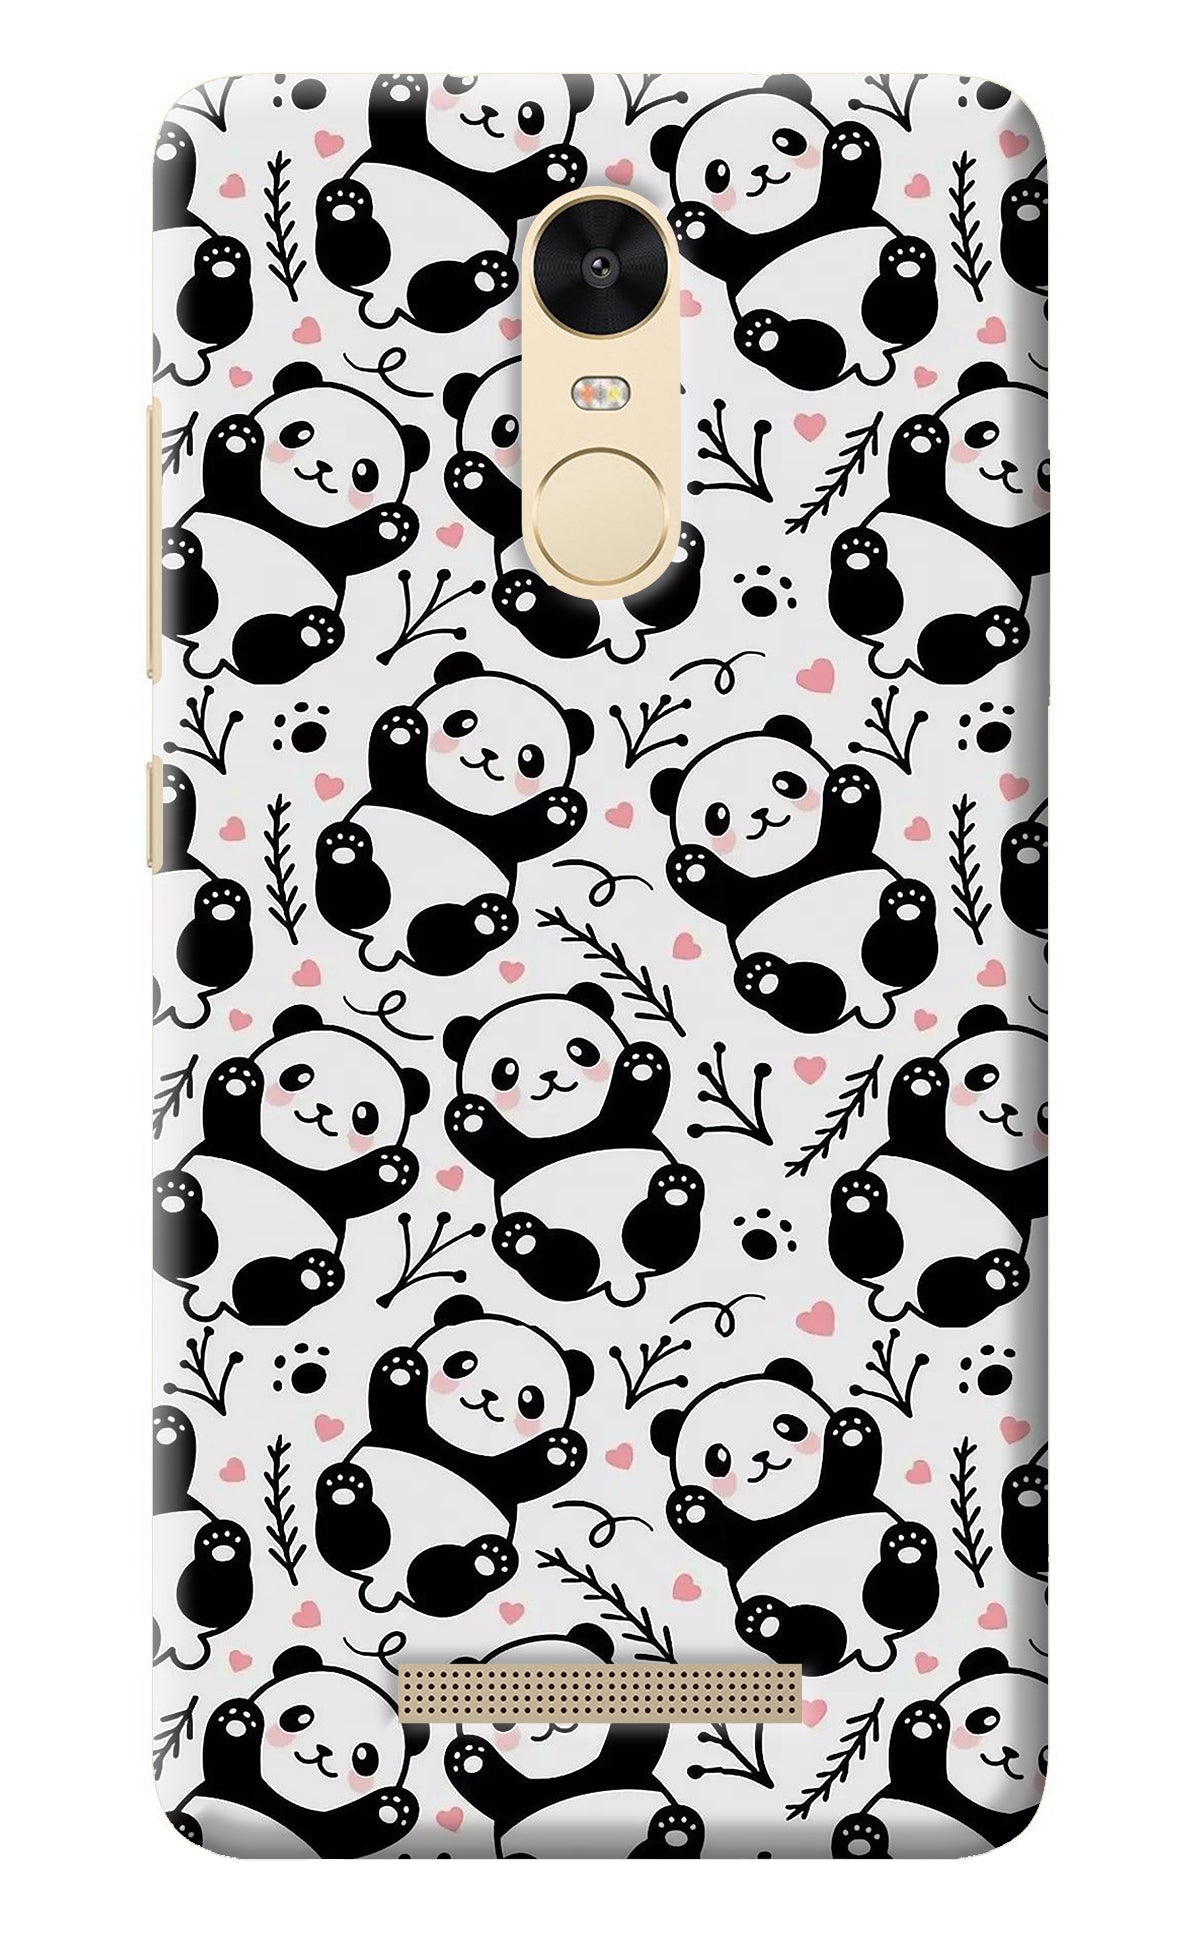 Cute Panda Redmi Note 3 Back Cover